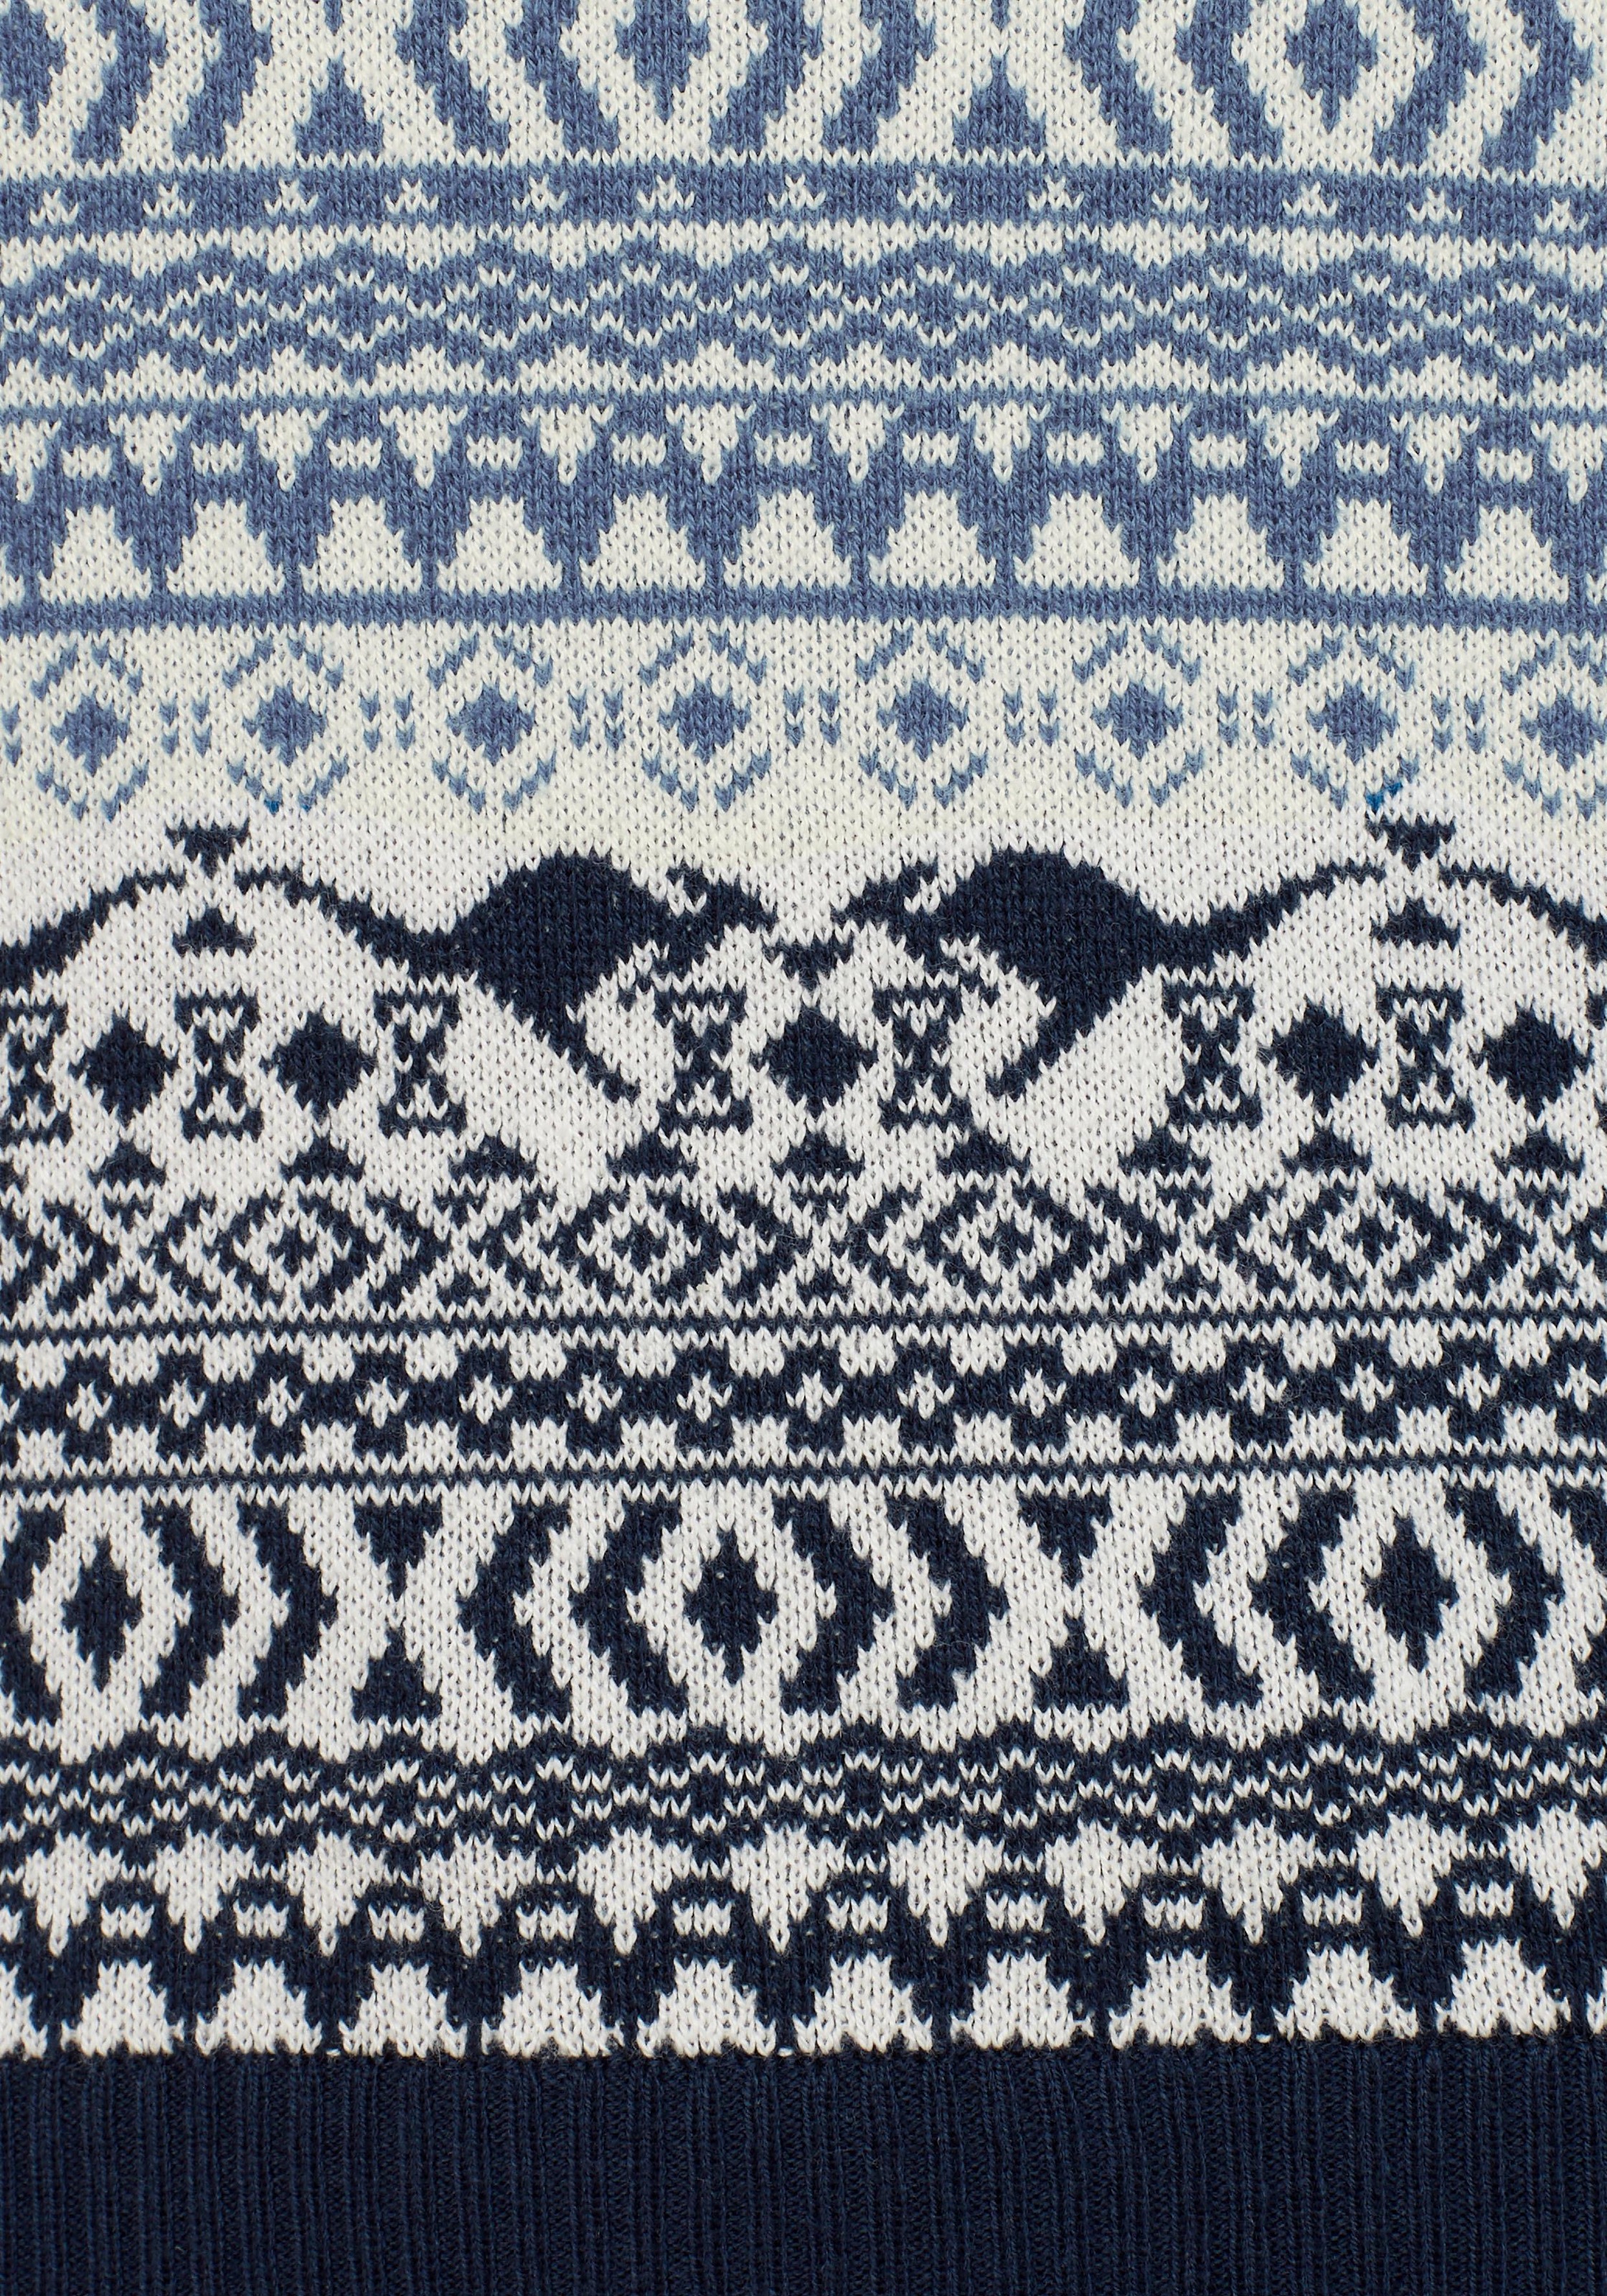 KangaROOS Jacquardpullover, im Norweger-Muster mit kleinen Kängurus